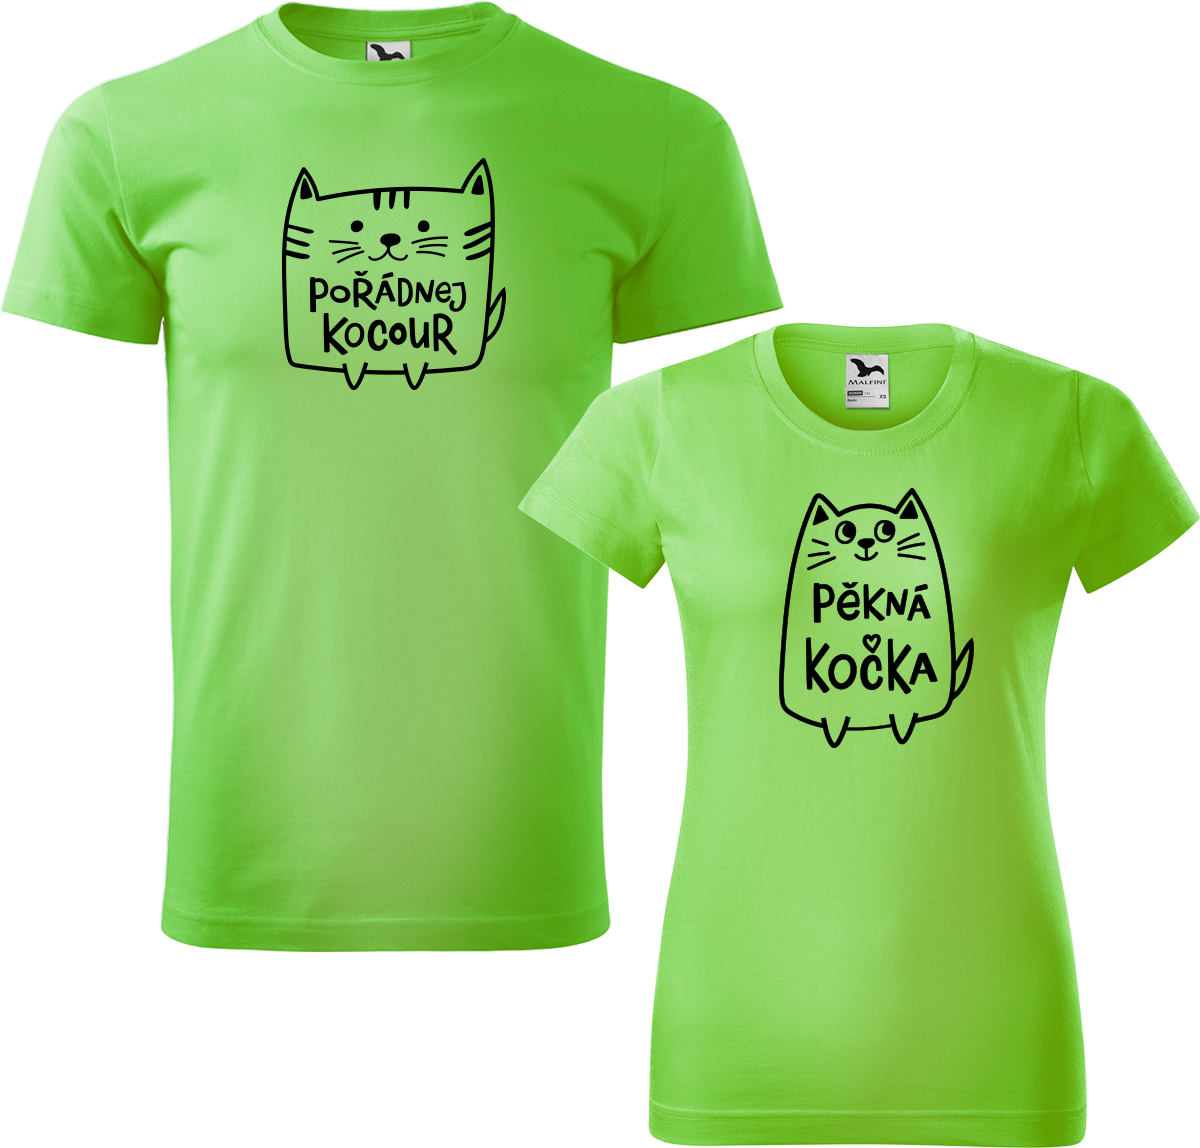 Trička pro páry - Pořádnej kocour a pěkná kočka Barva: Apple Green (92), Velikost dámské tričko: L, Velikost pánské tričko: L